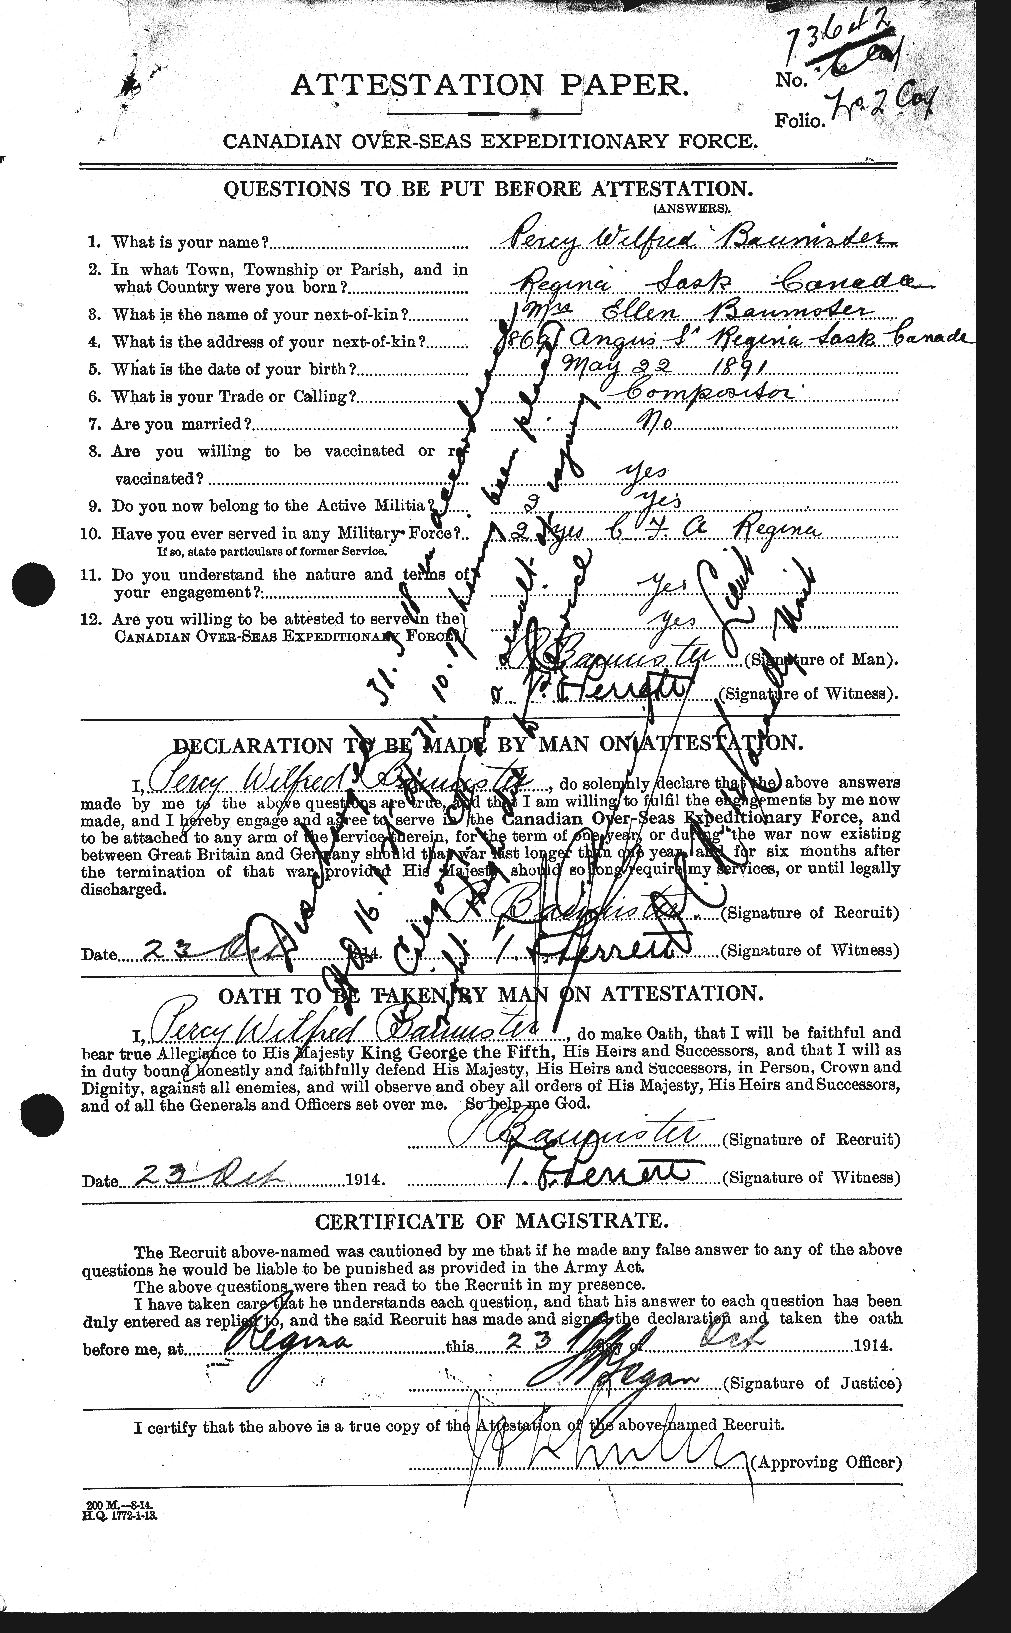 Dossiers du Personnel de la Première Guerre mondiale - CEC 224774a